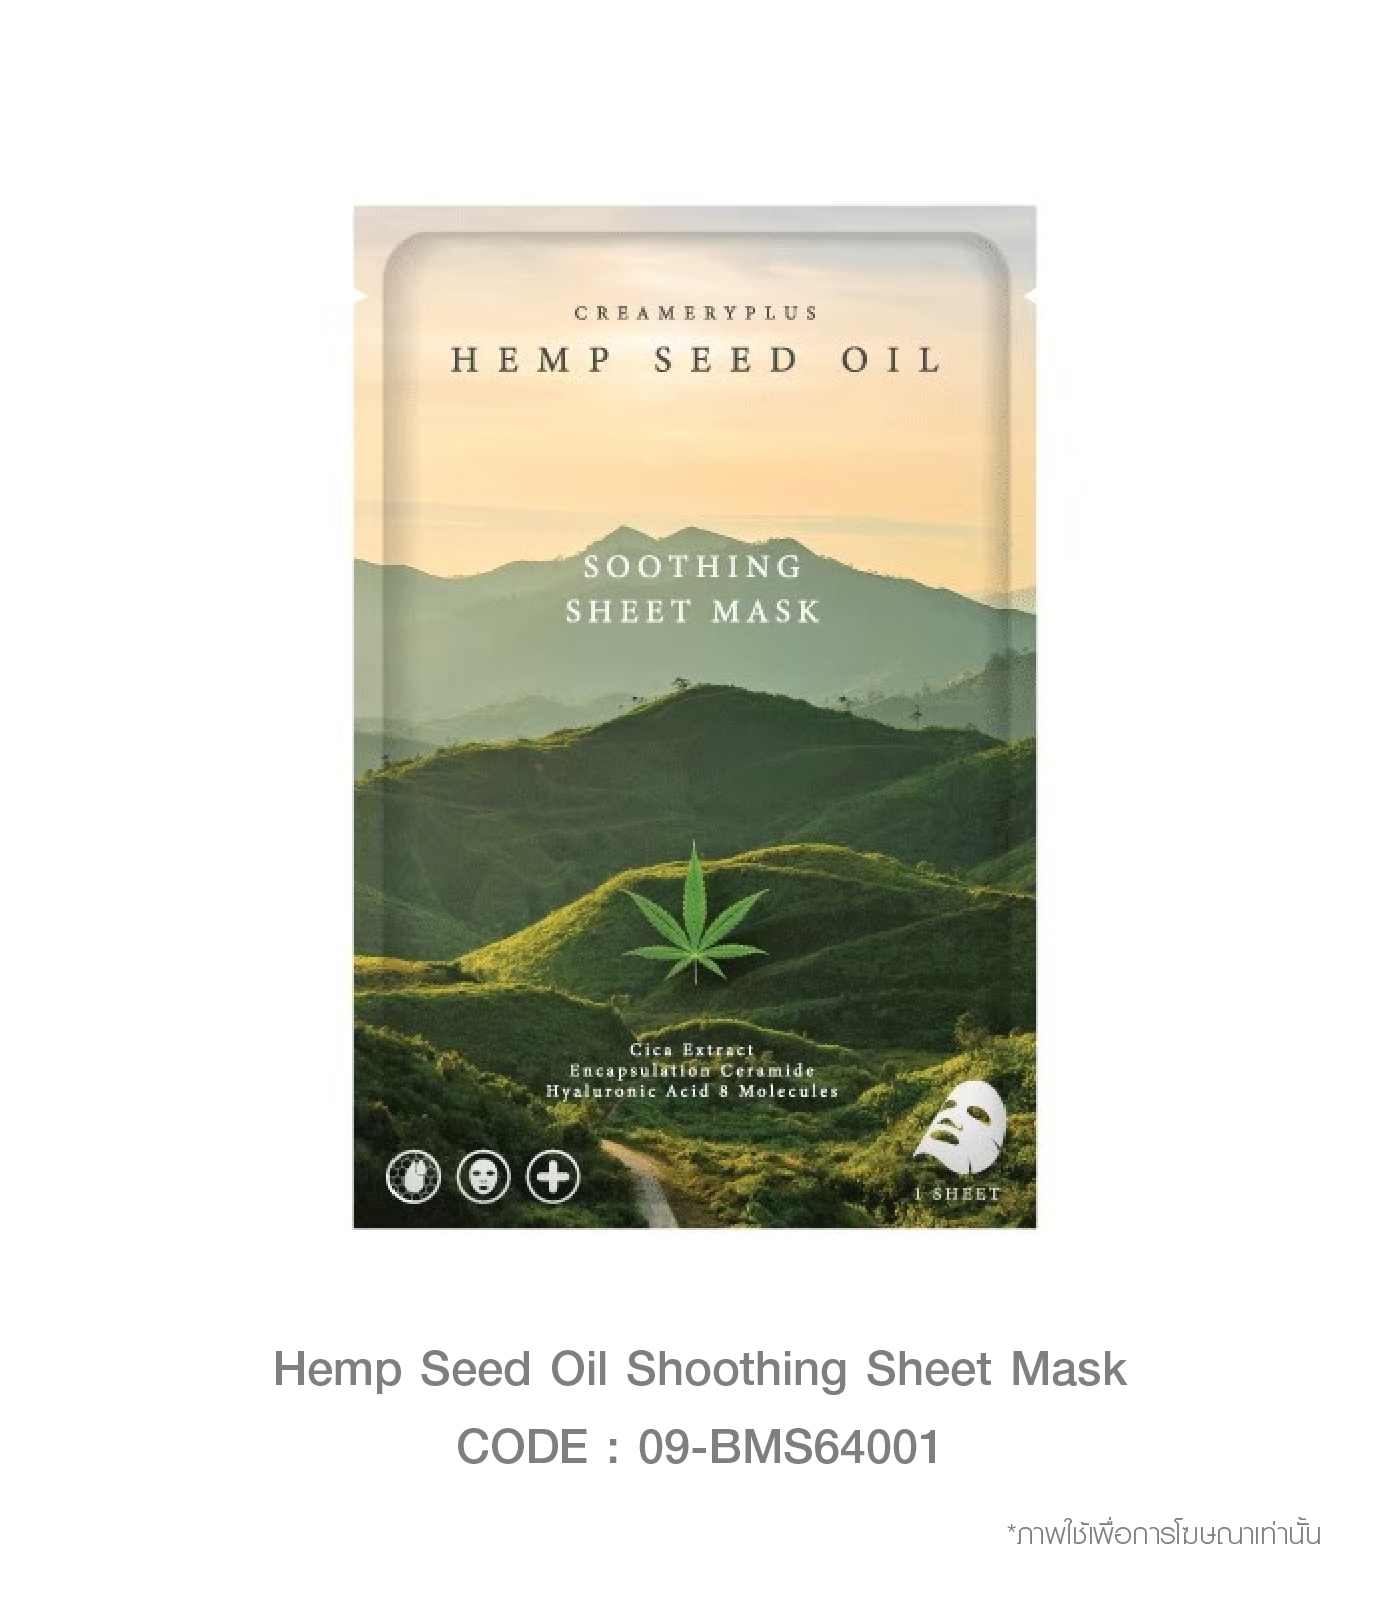 Hemp Seed Oil Shoothing Sheet Mask